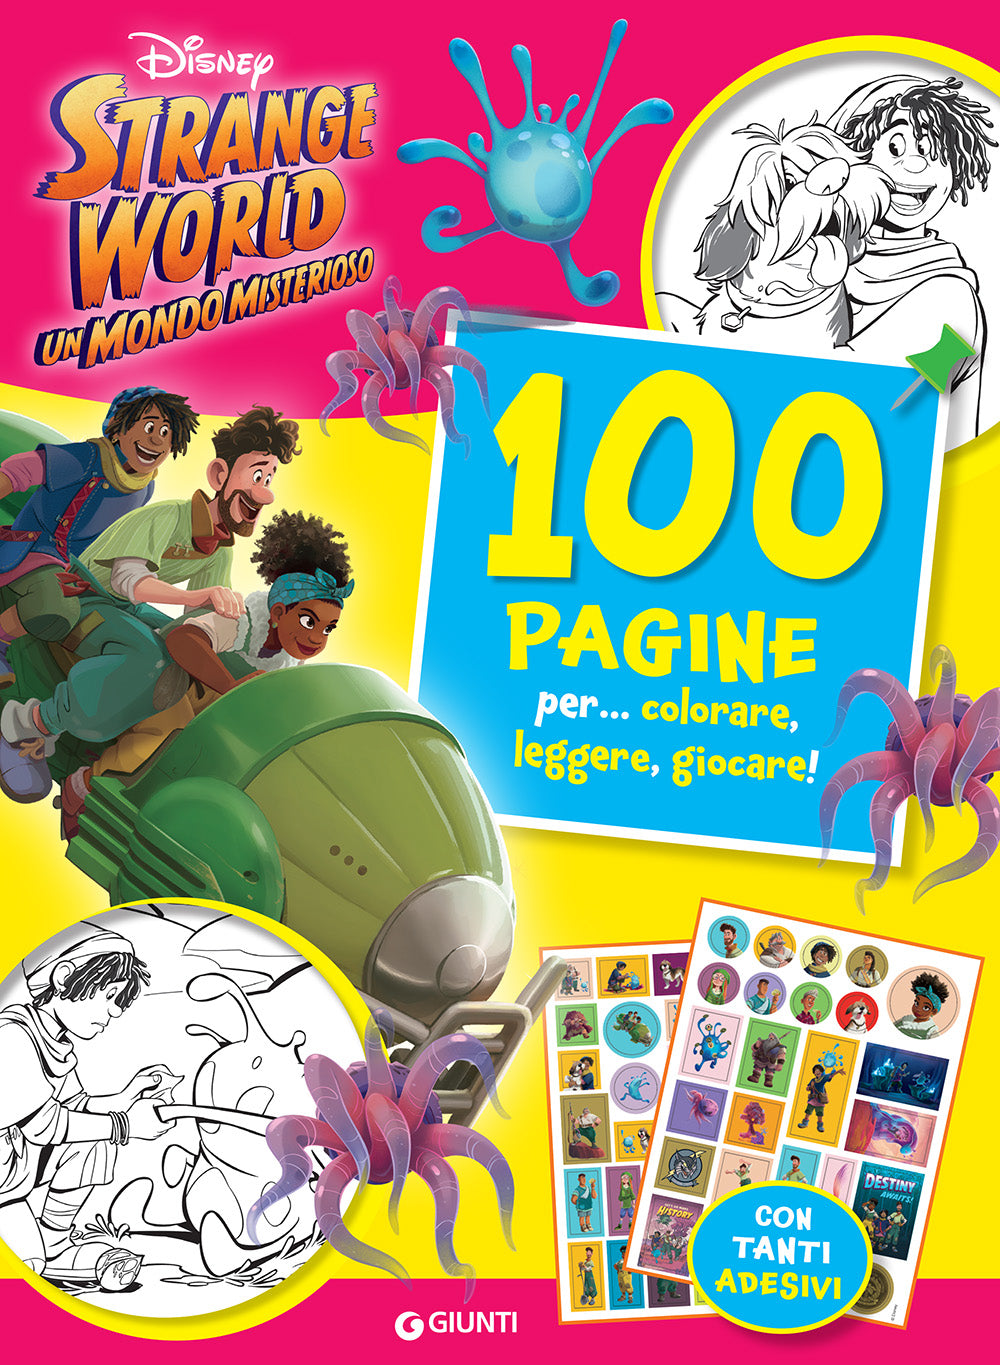 Strange World 100 Pagine per colorare, leggere, giocare. Un mondo misterioso